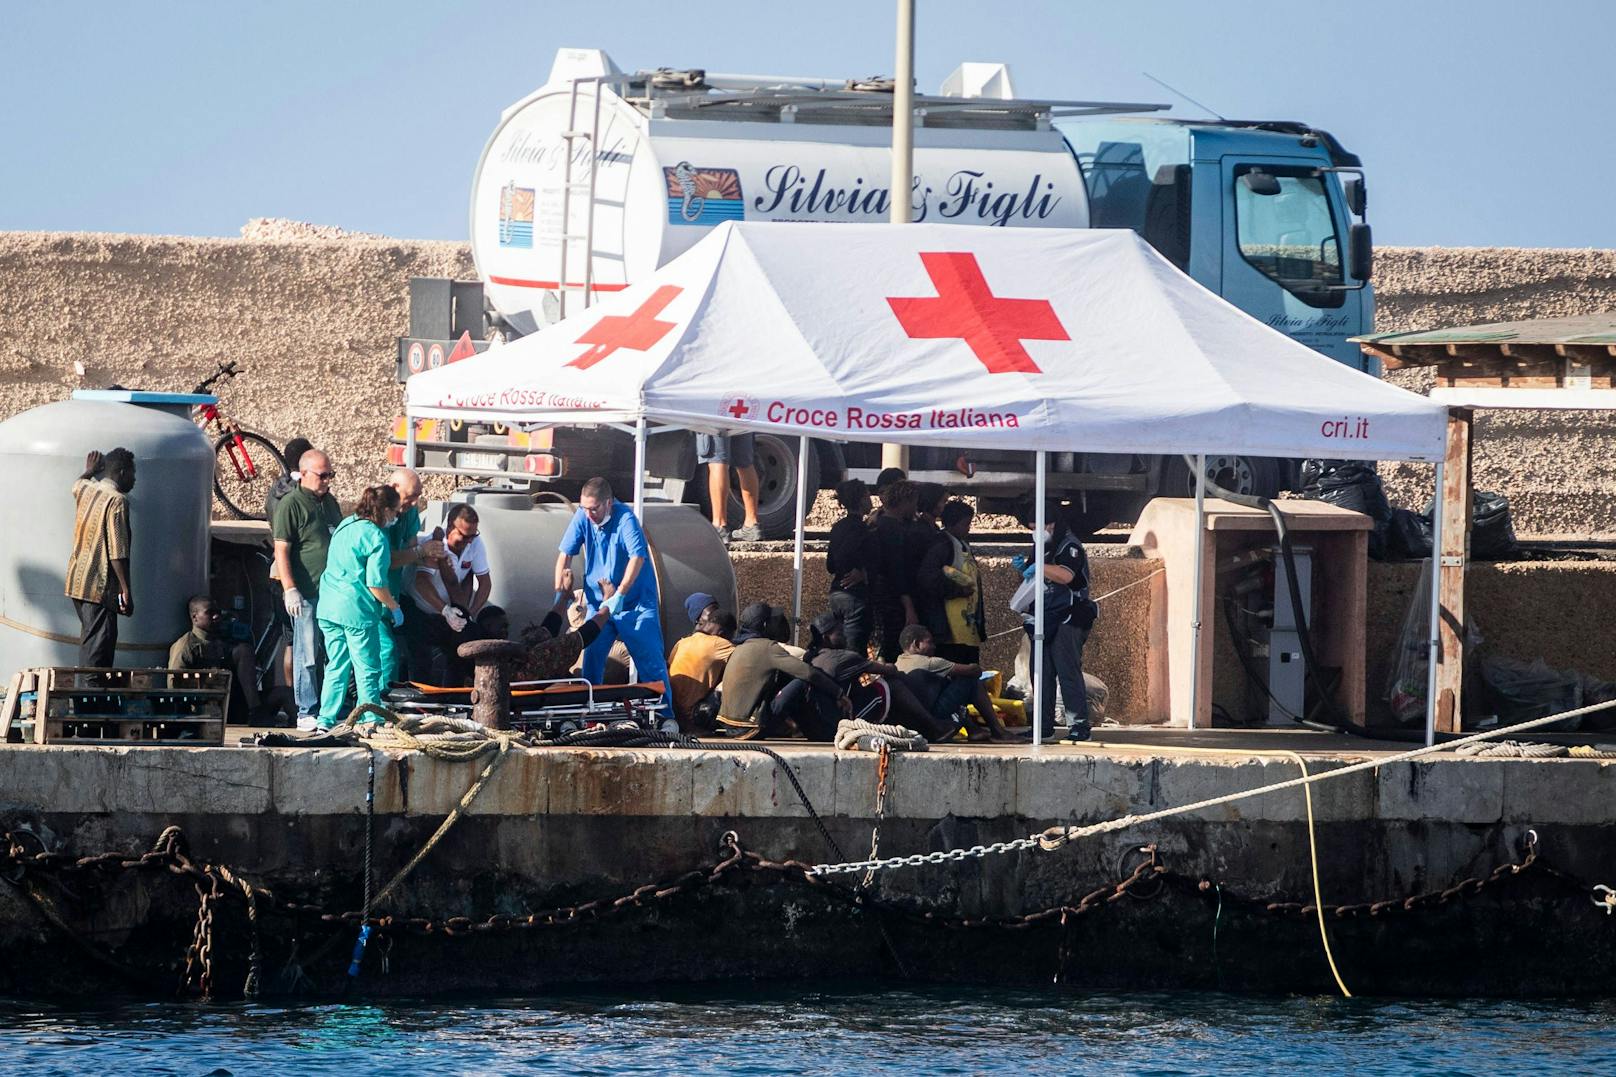 Aufgrund der steigenden Zahl an ankommenden Migranten hat die italienische Insel Lampedusa den Notstand ausgerufen.